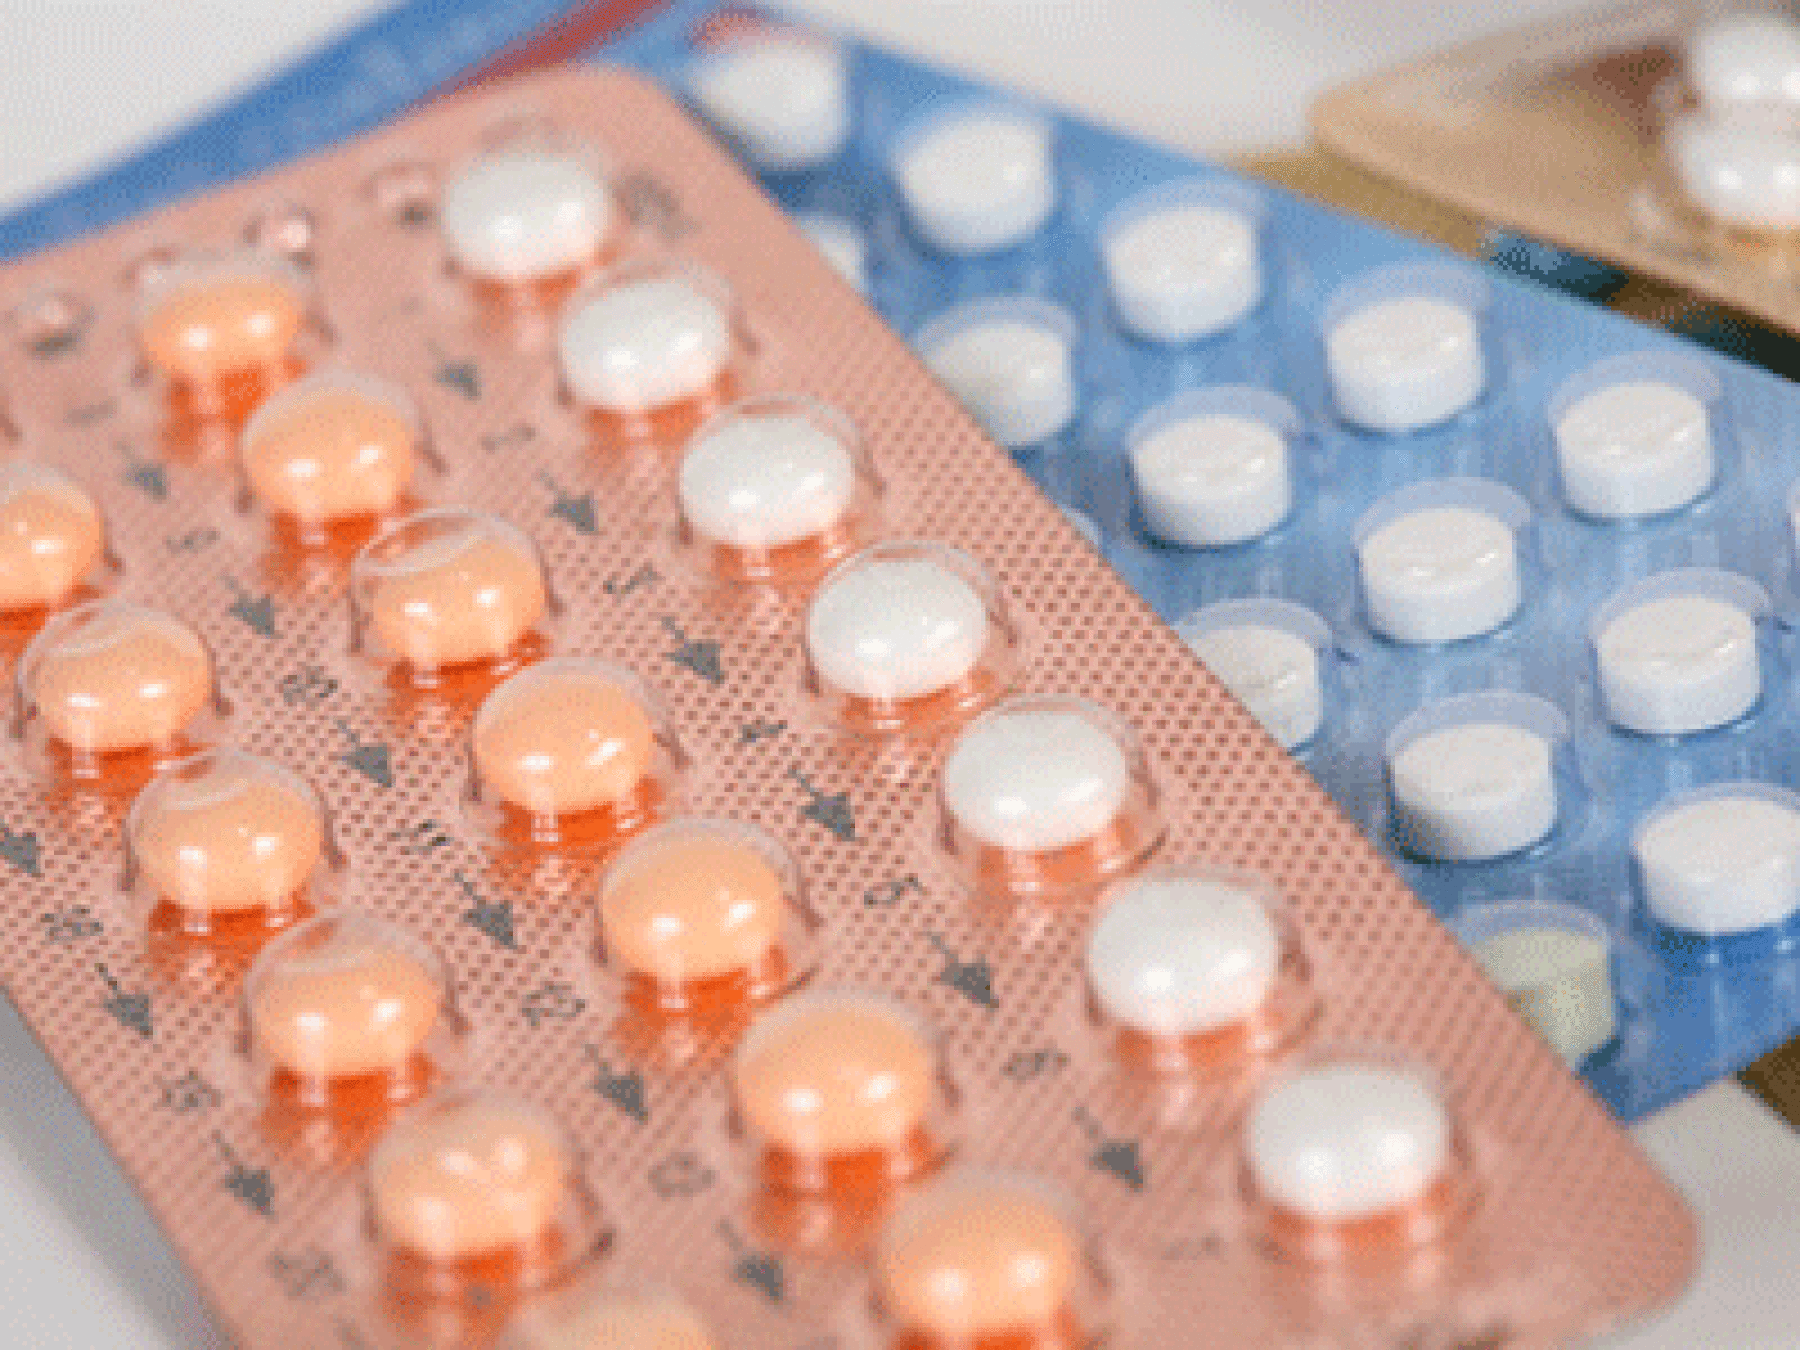 Pilule et contraception : tout ce qu'il faut savoir